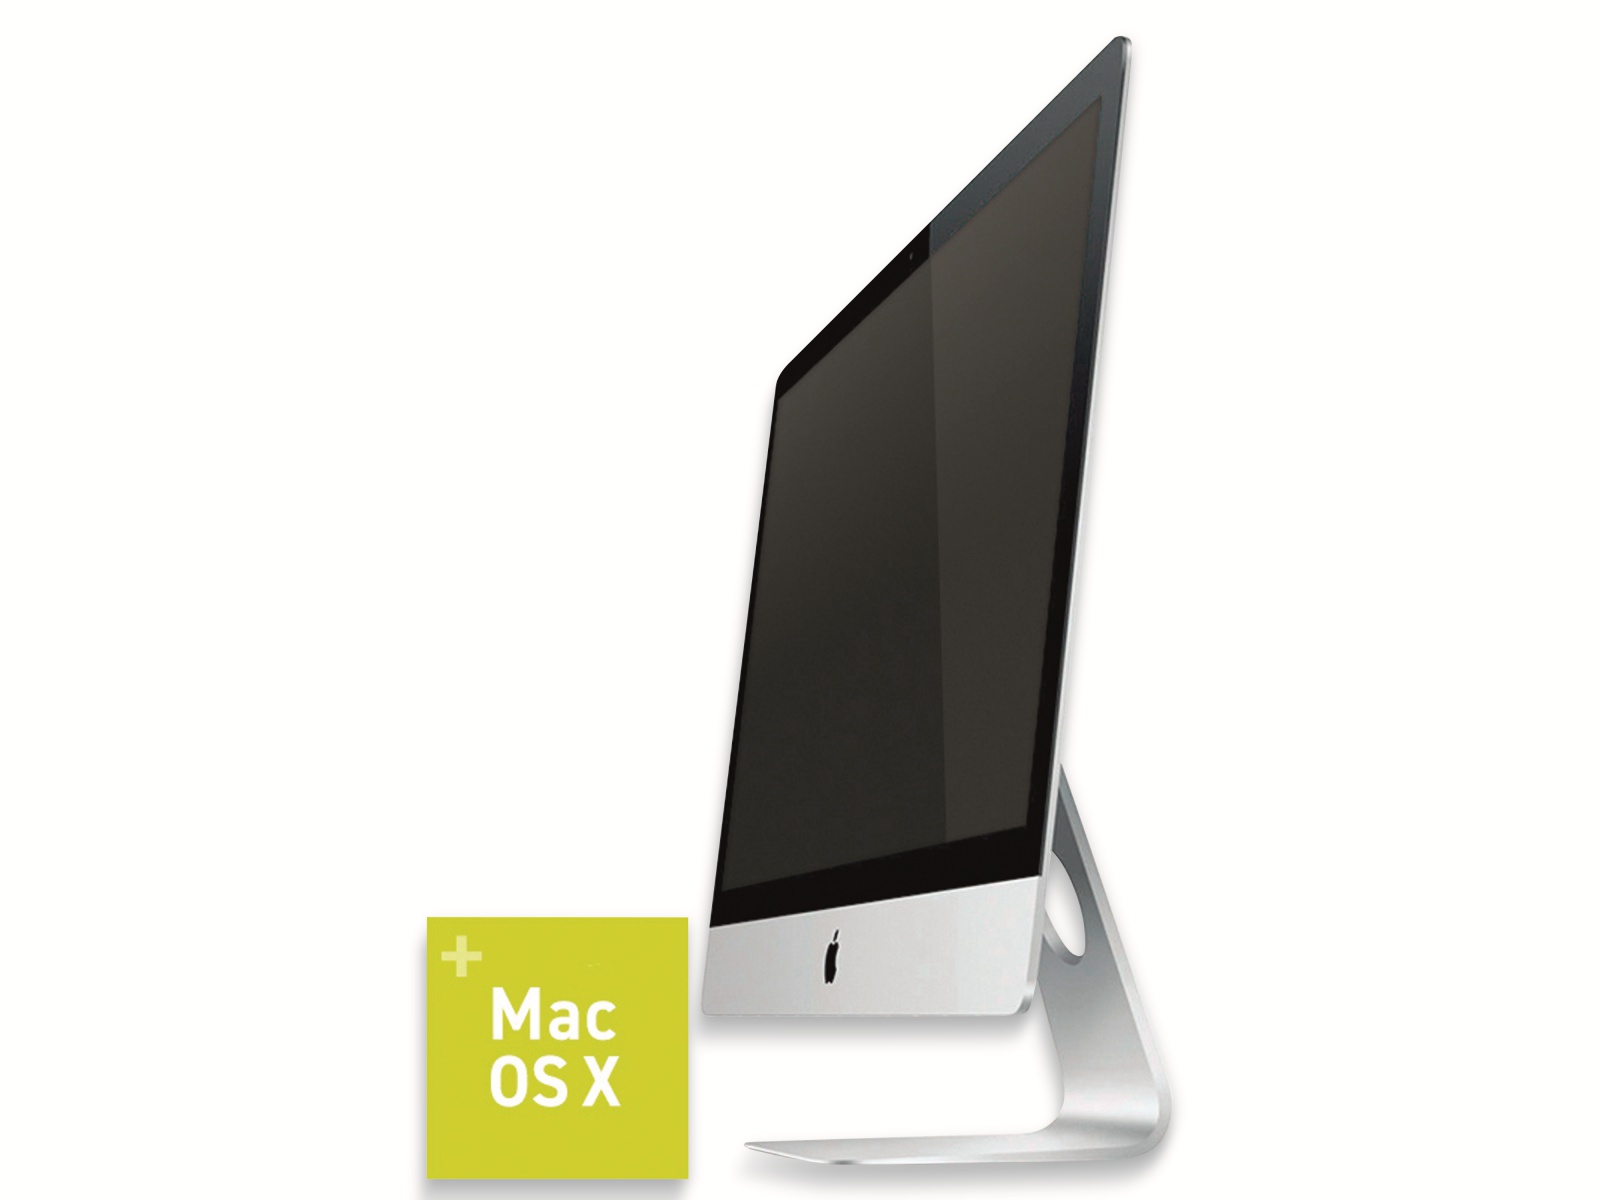 APPLE iMac 27 Late 2013, Intel i7, 16GB RAM, 128 GB/1TB SSD/HDD, Refurbished